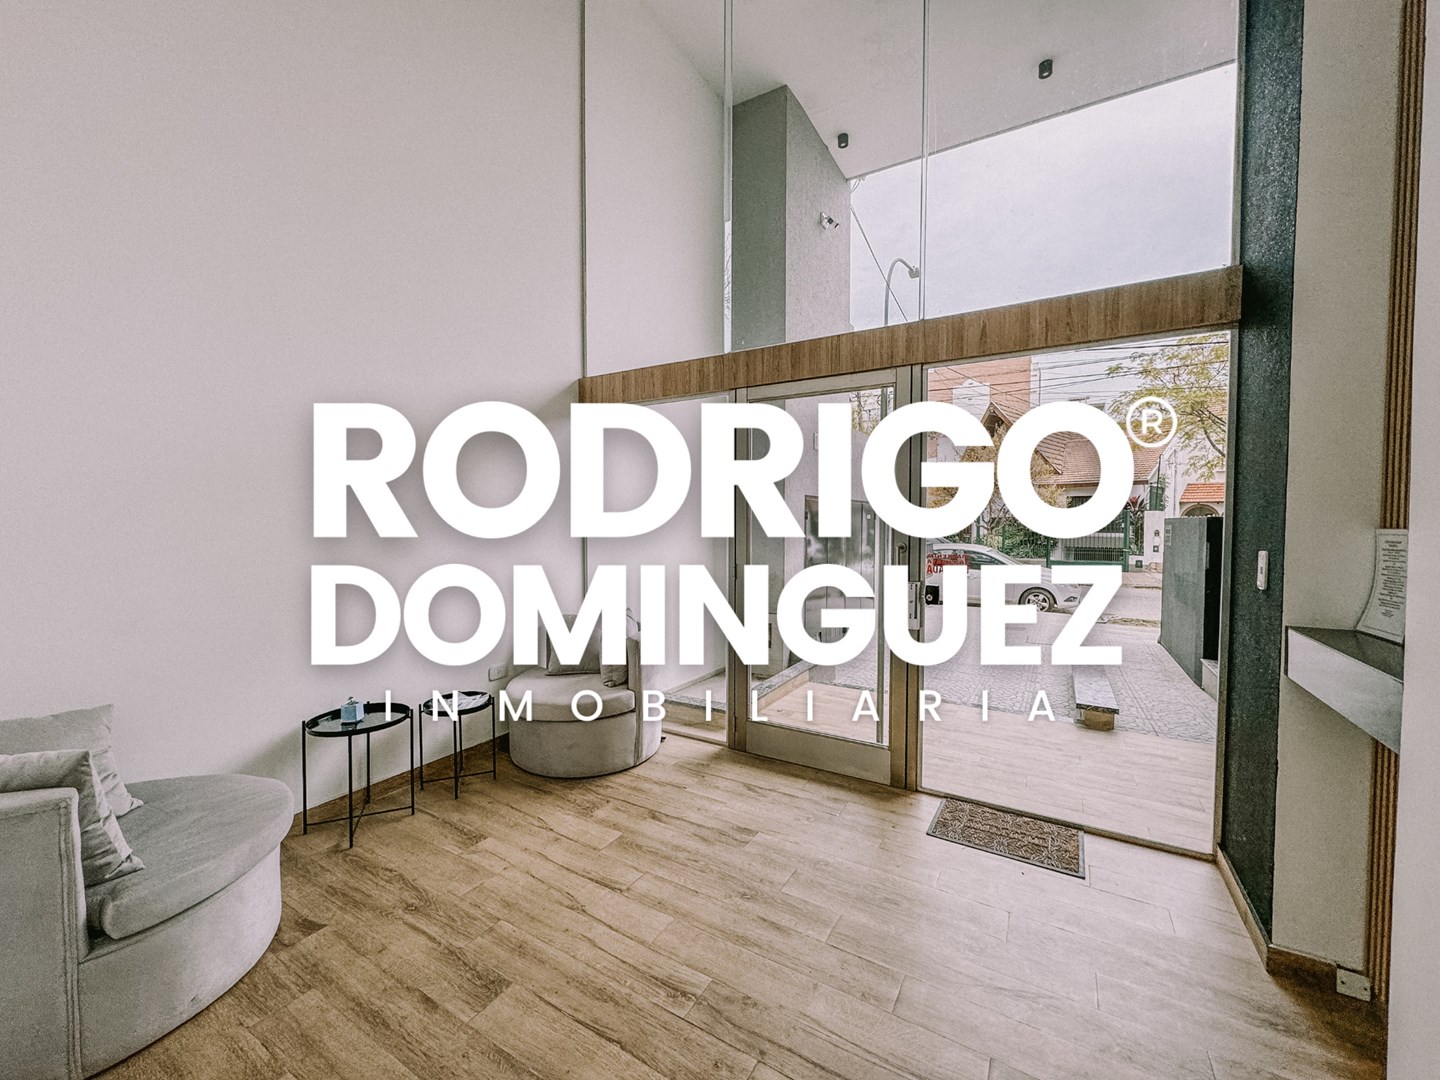 #5169208 | Venta | Departamento | Lanus Este (Rodrigo Dominguez Inmobiliaria)